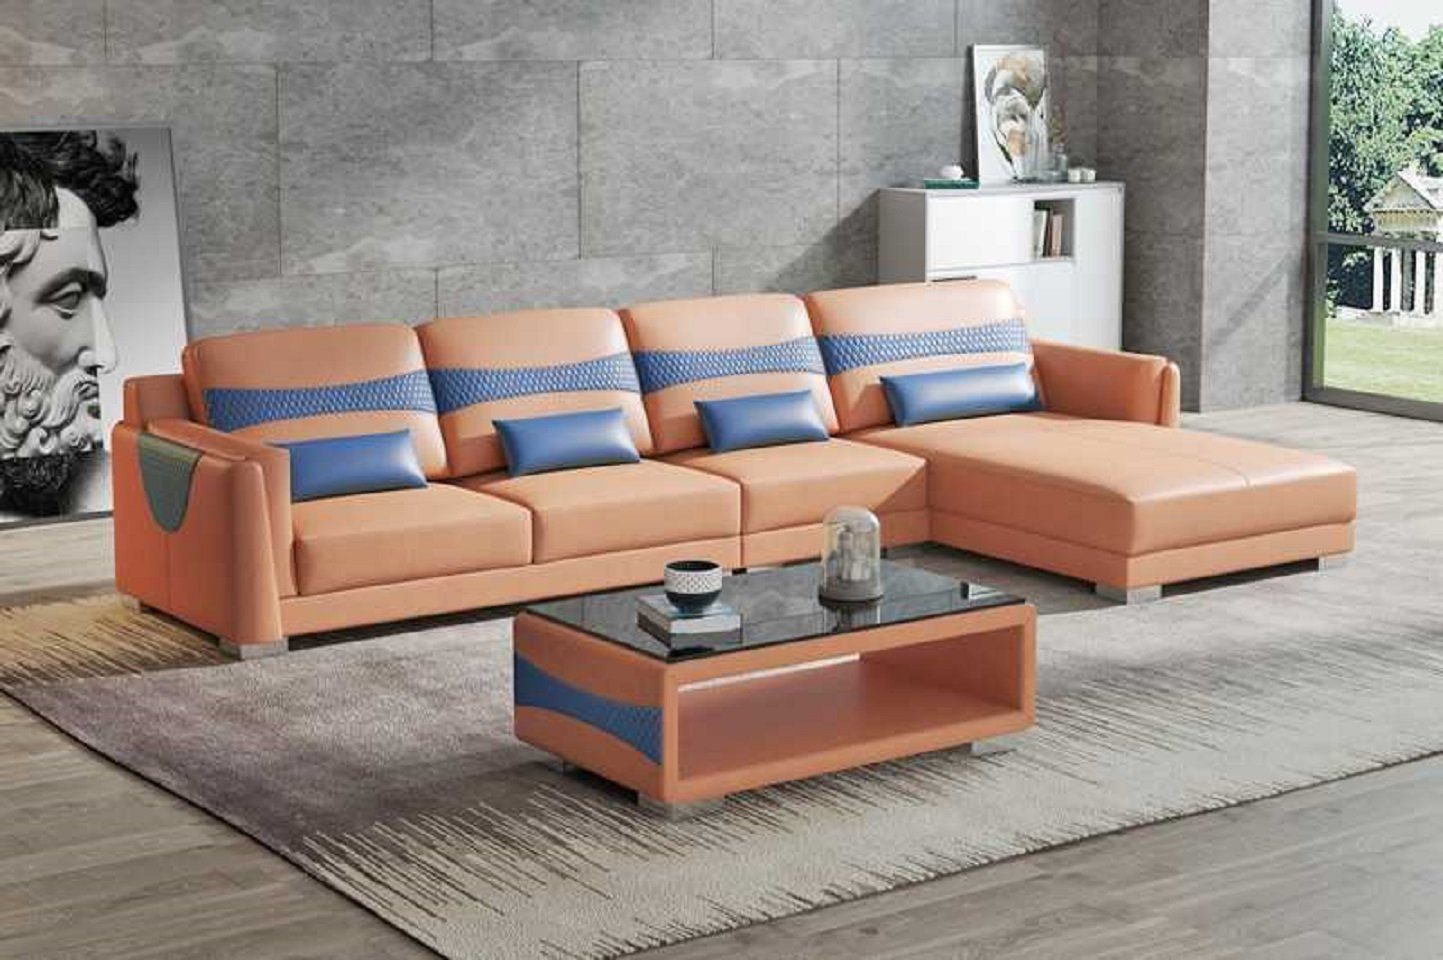 JVmoebel Ecksofa Luxus Eckgarnitur Ecksofa L Form Liege Couch Sofa Wohnzimmer Neu, 3 Teile, Made in Europe Braun